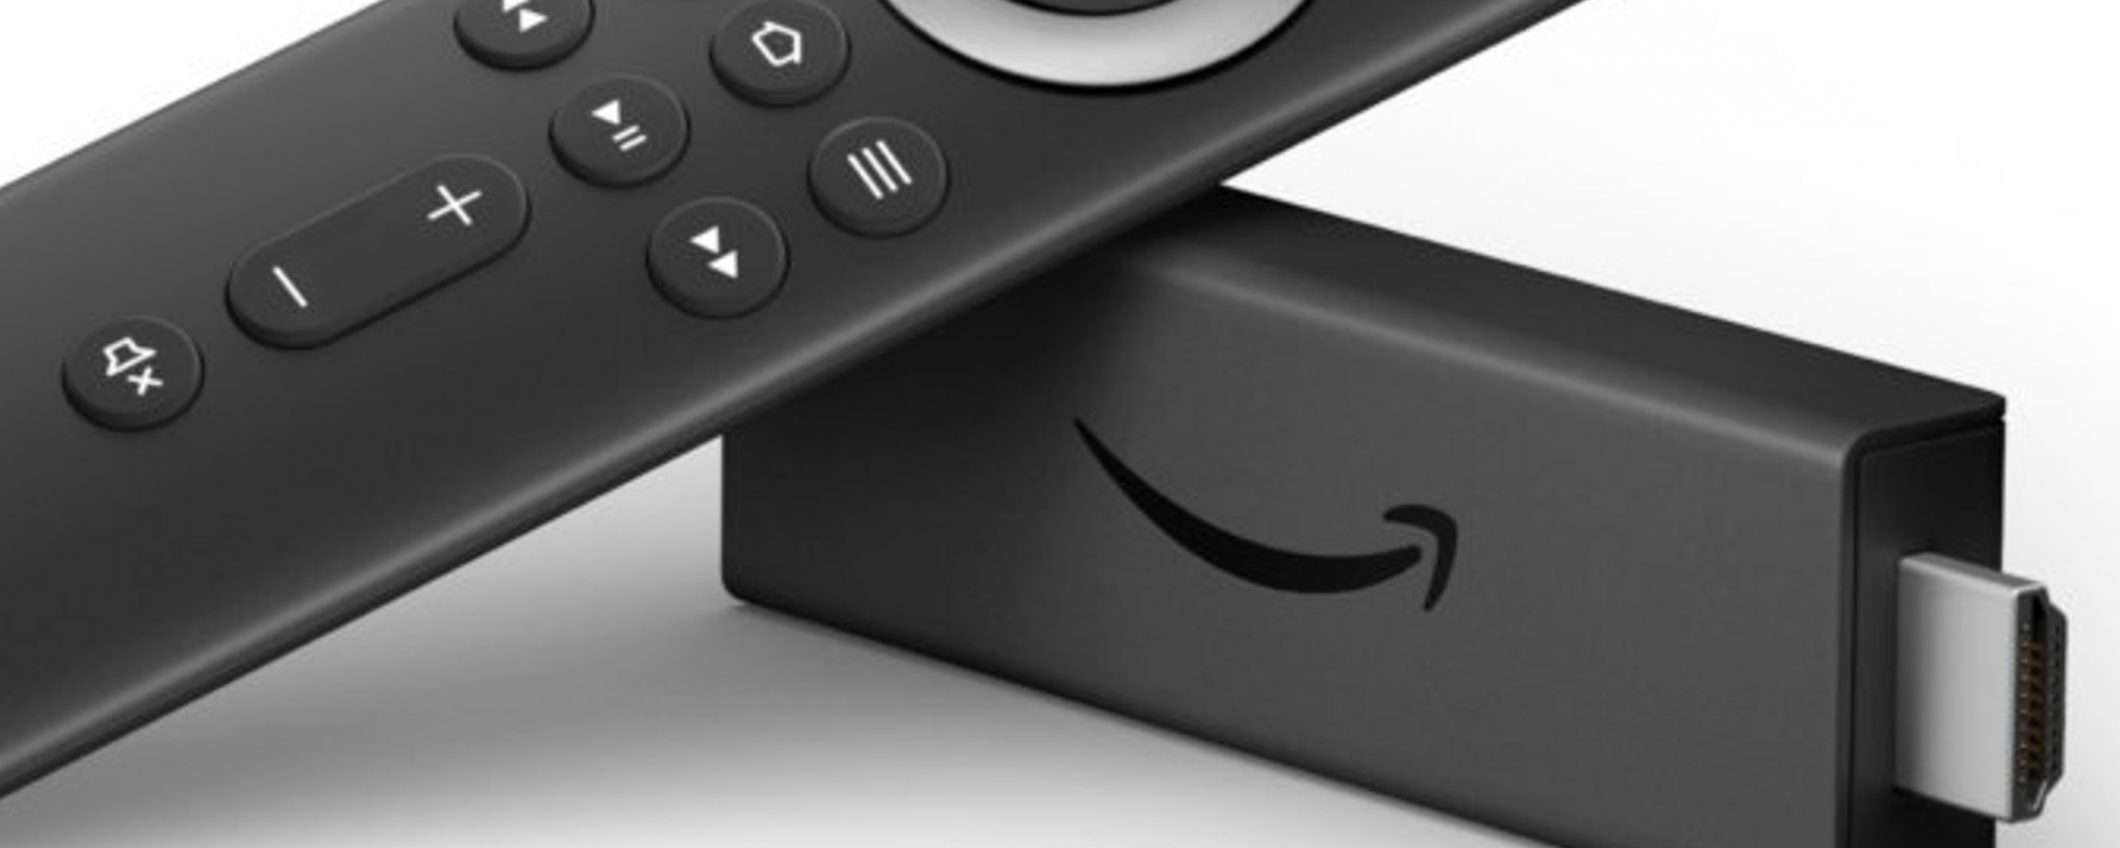 Bomba da Unieuro: Amazon Fire TV Stick 4K a meno di 40 euro